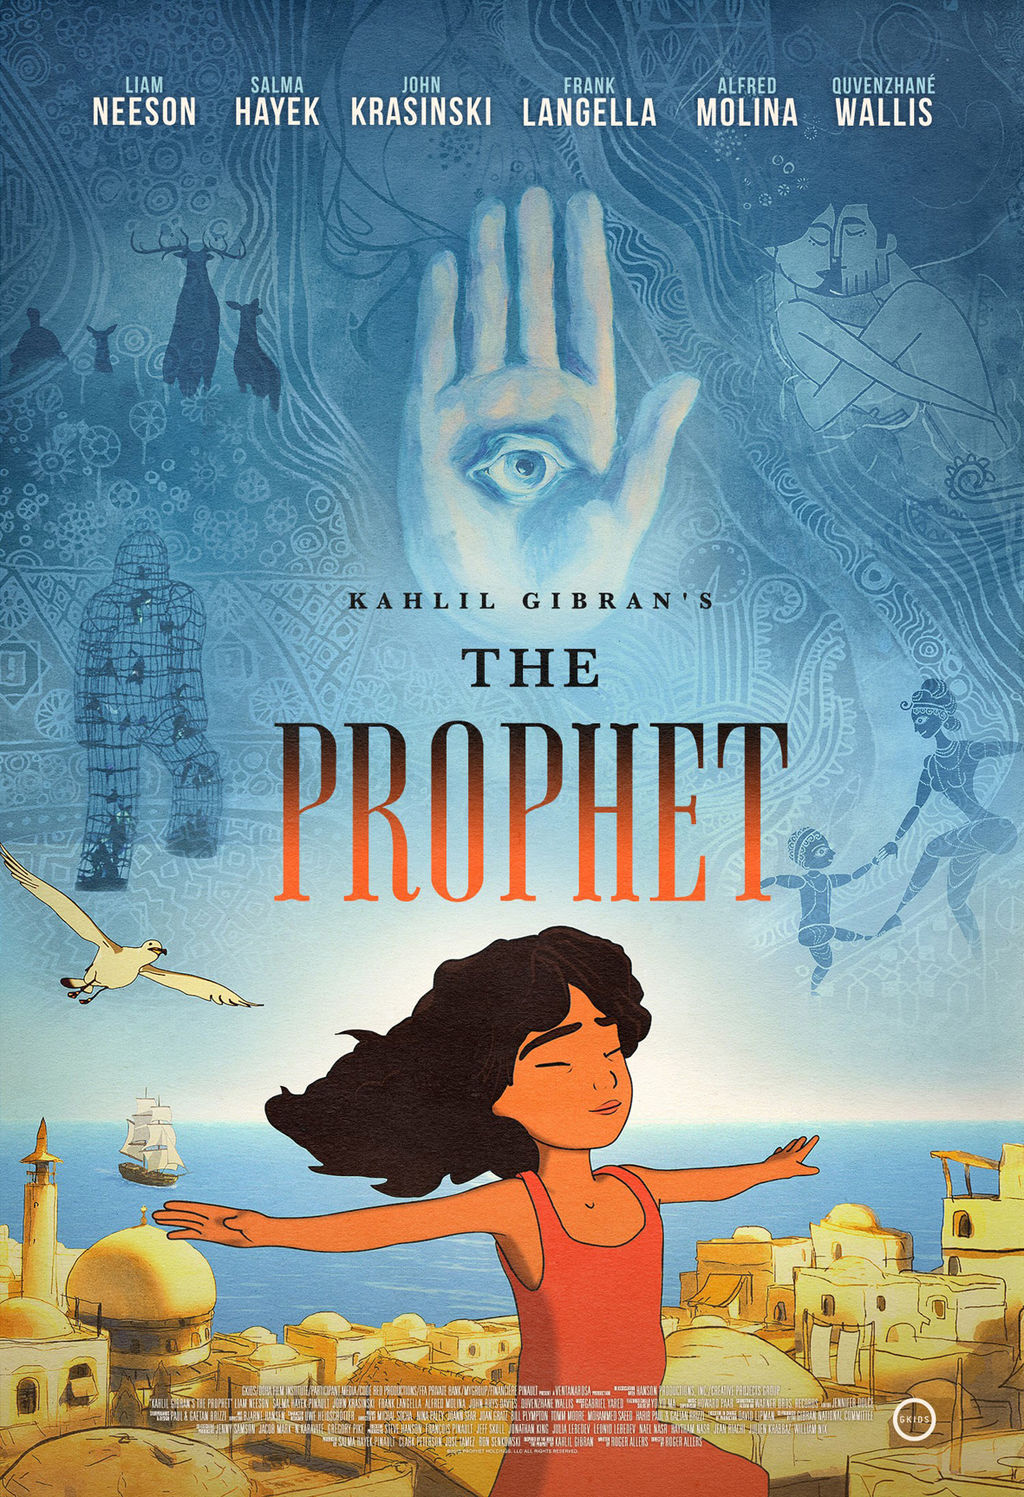 El Profeta: Producida por Salma Hayek. Tres nominaciones al Annie, premio anual por parte de la Asociación Internacional de Películas Animadas, entre ellas a Mejor Película.
